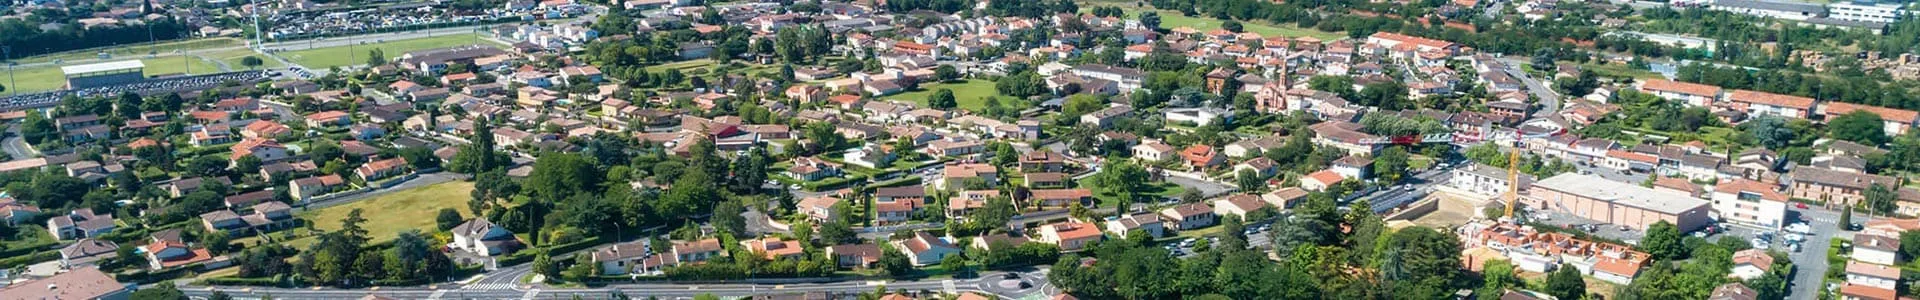 Vue aérienne du quartier autour de la résidence Le Clos du Marronnier